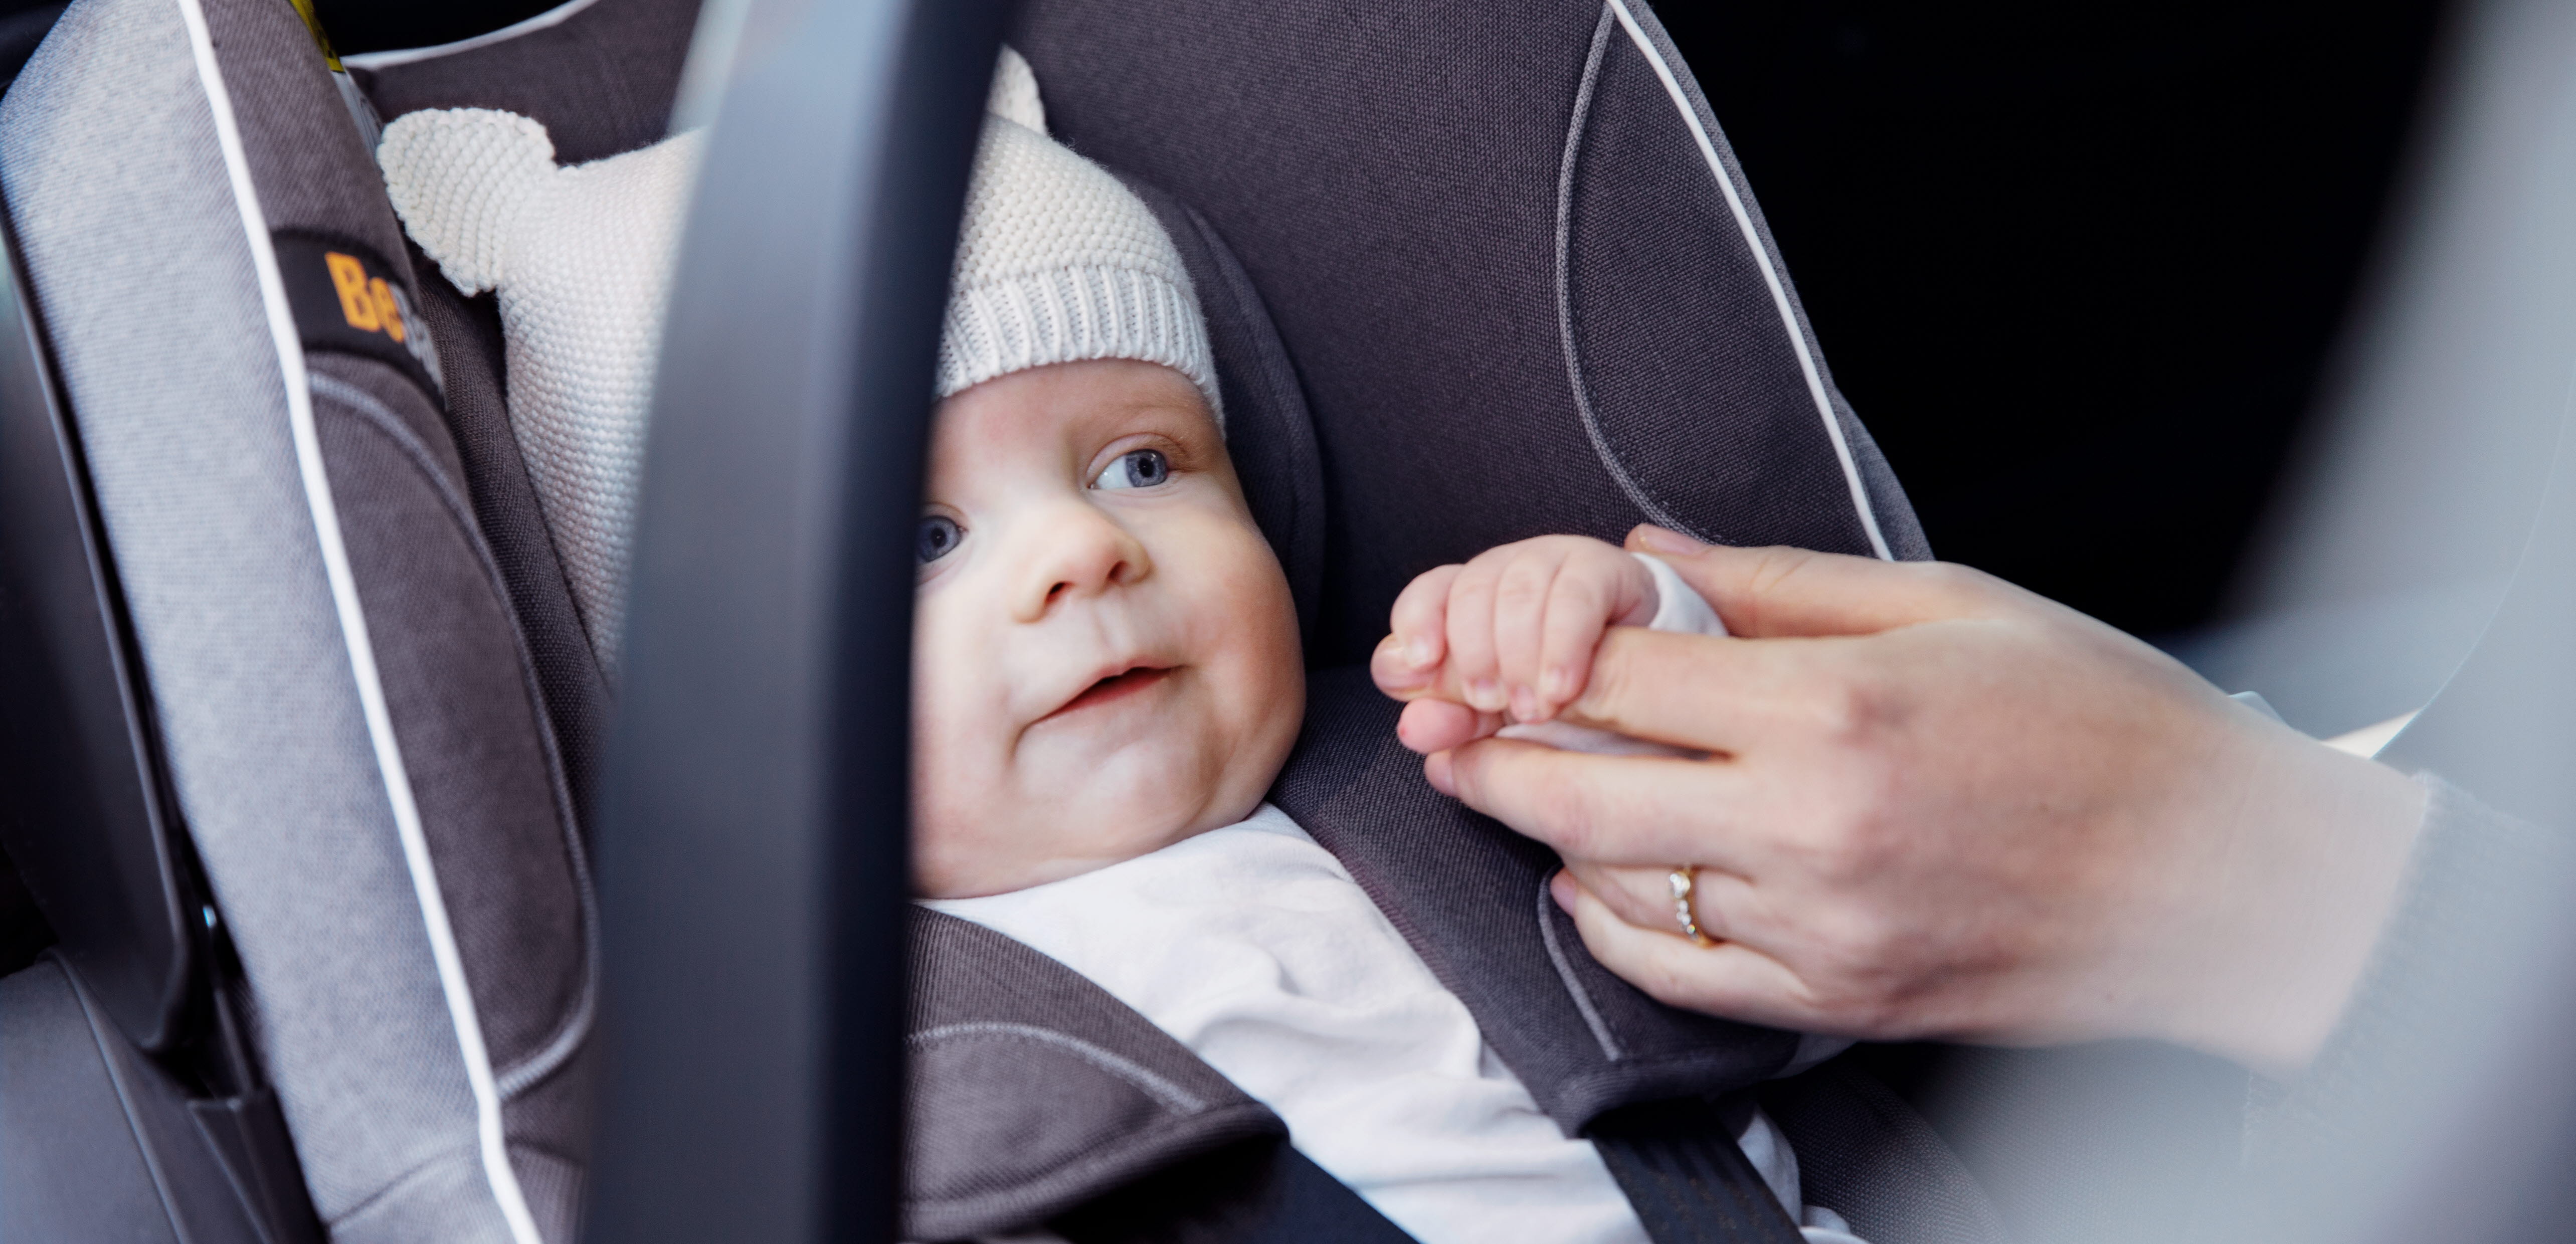 Bébé en siège - Comment savoir si bébé est en siège